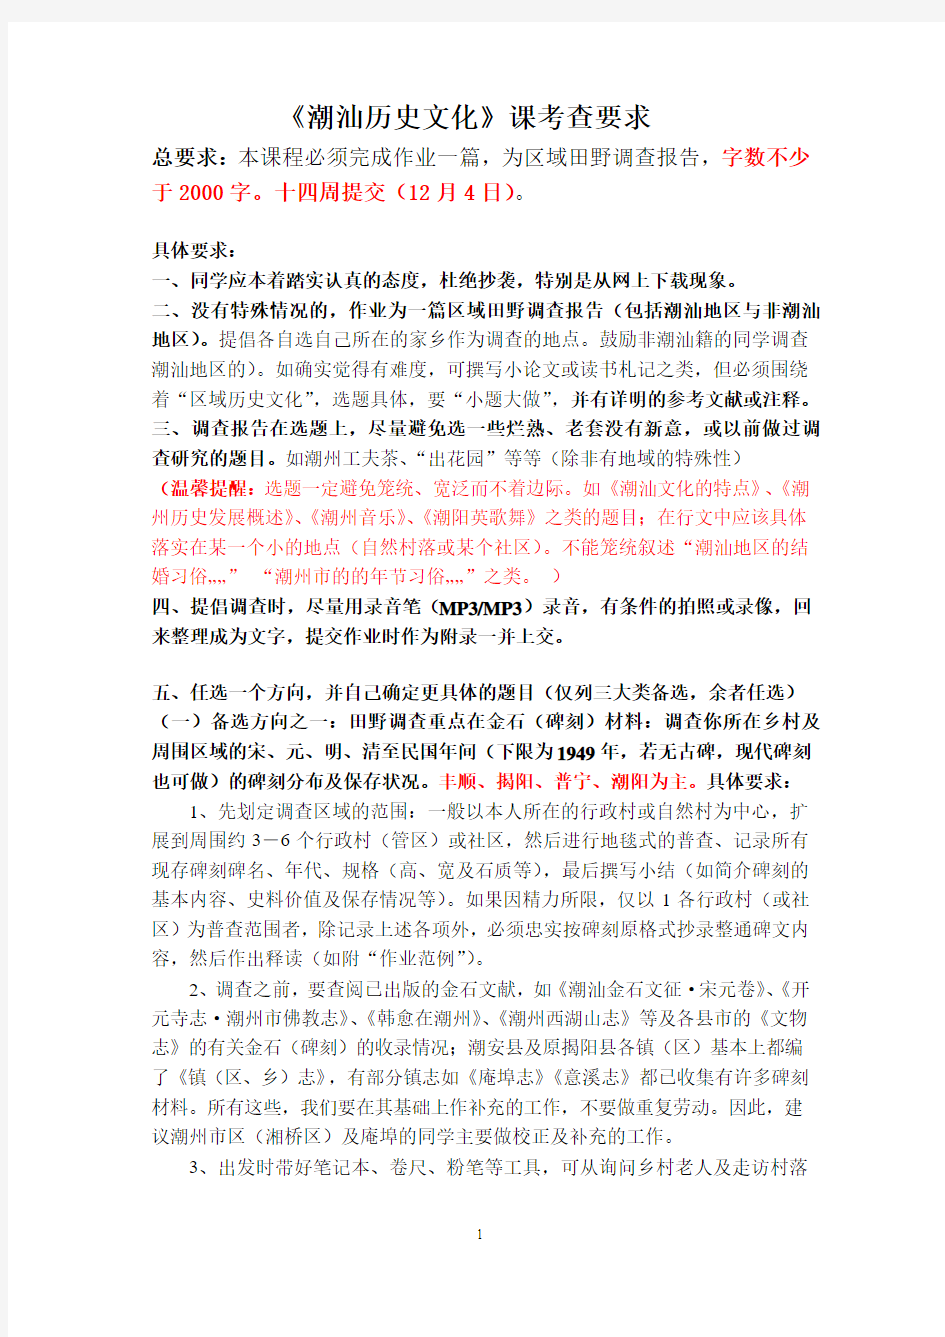 潮汕历史文化课期末作业详明要求(2012年4月18日修改)